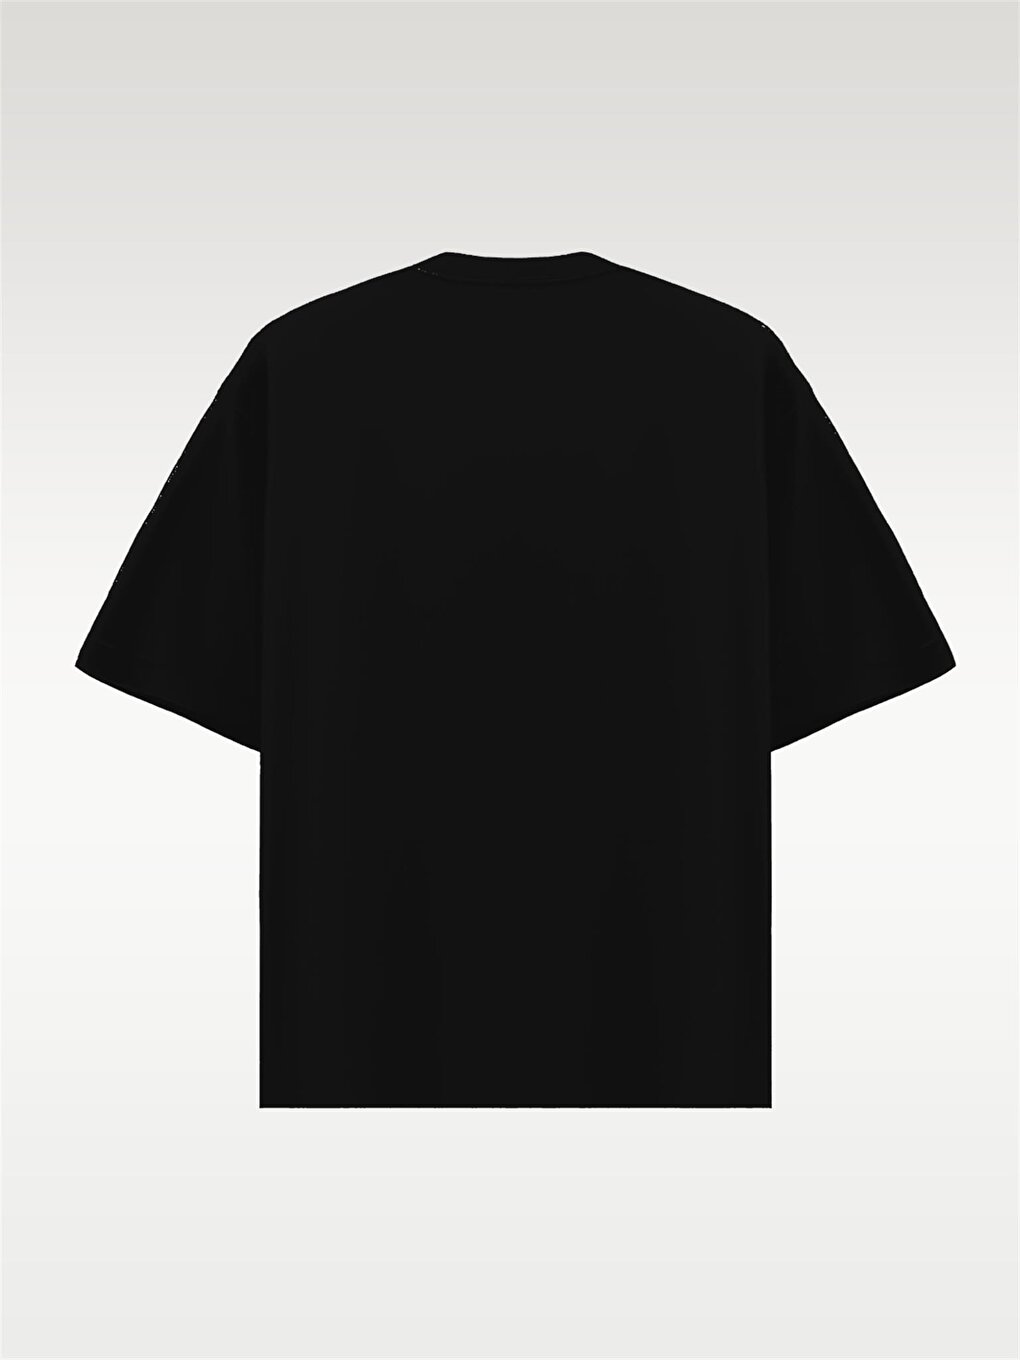 Базовая футболка Oversize черная ablukaonline